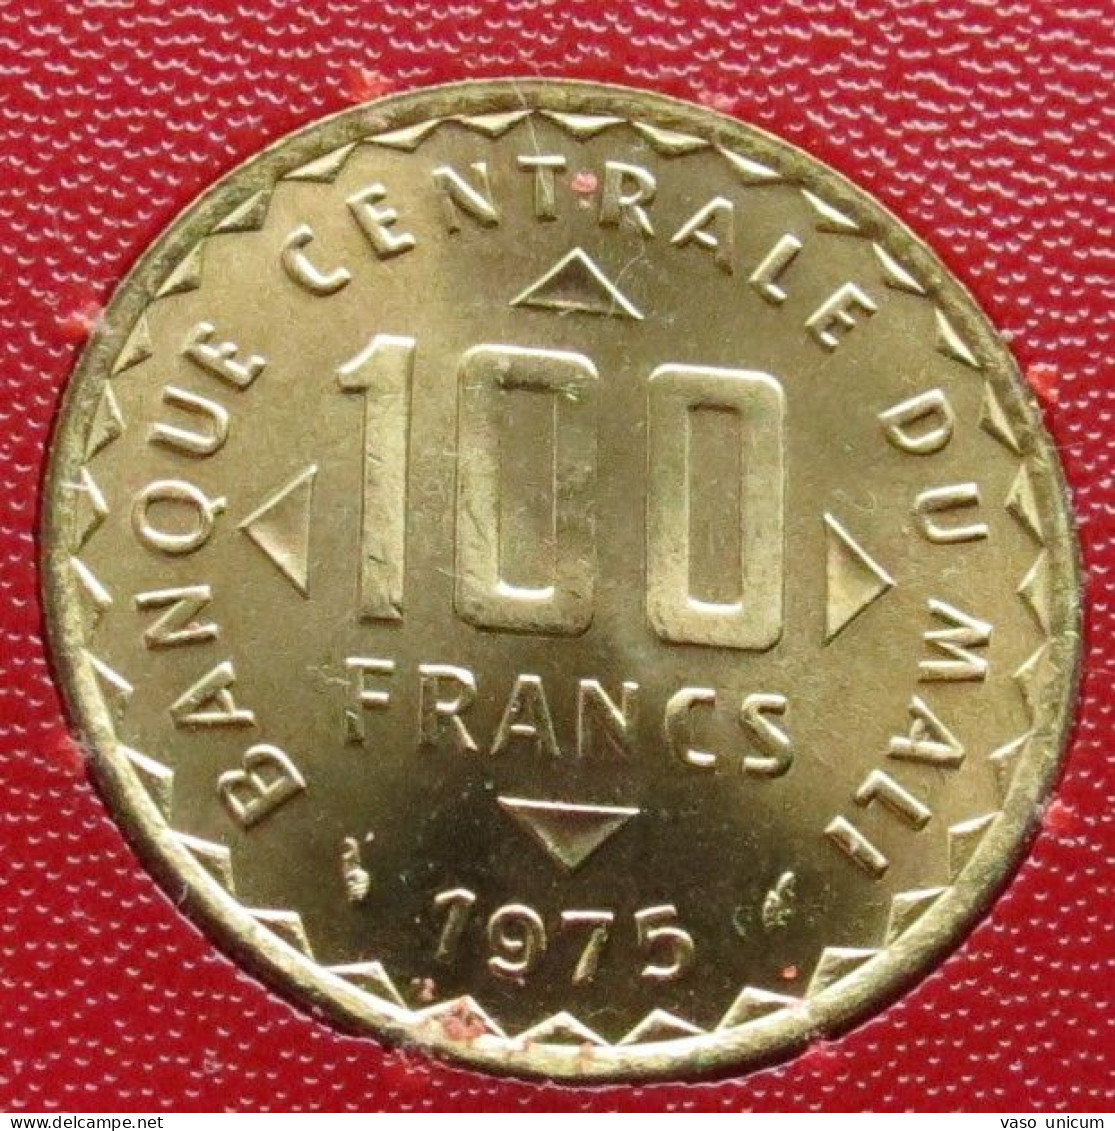 Mali 100 Francs 1975 FAO F.a.o. - Mali (1962-1984)